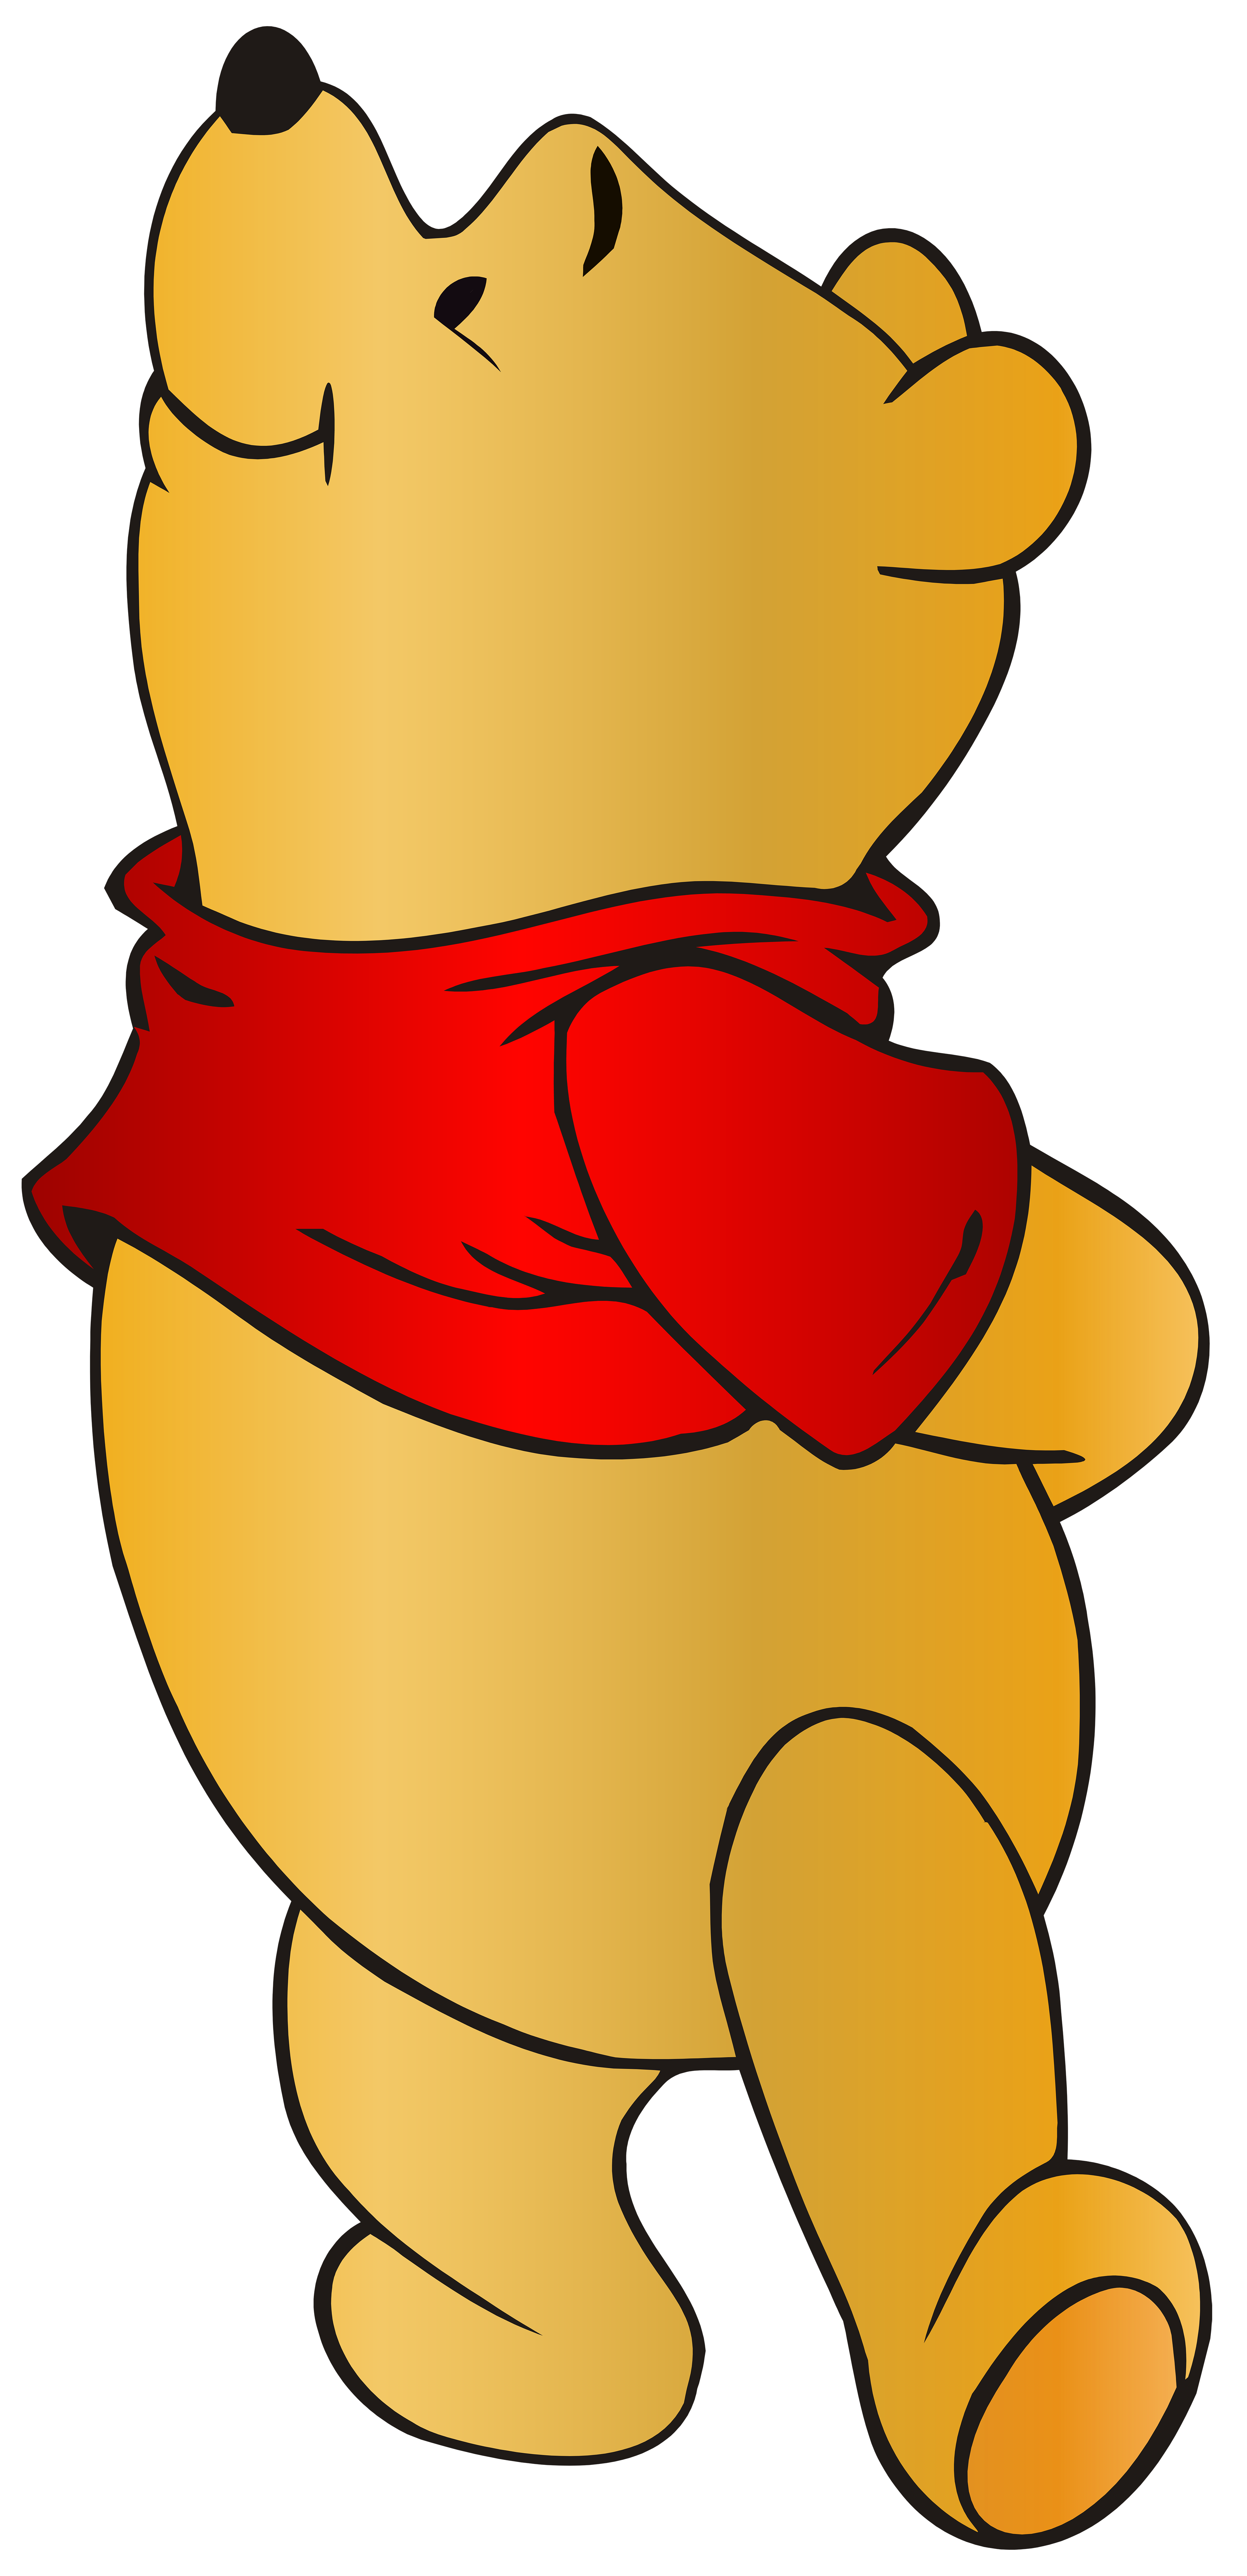 clipart balloon winnie the pooh